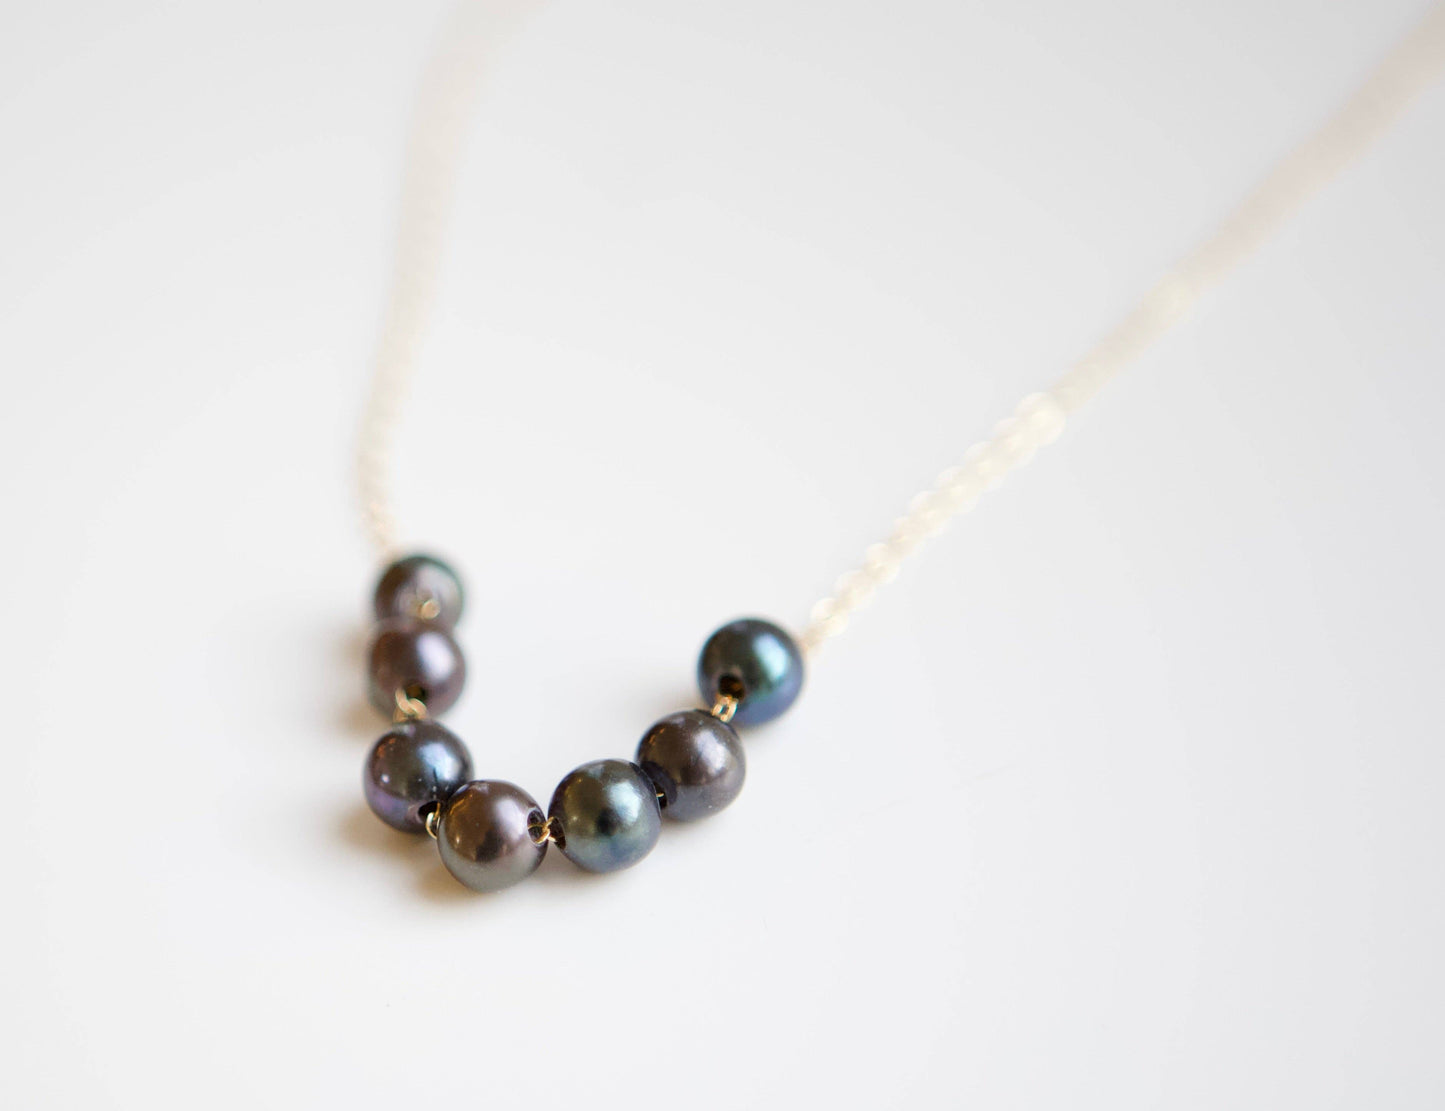 Creations by Kristel - Collier en or rempli de code Morse "MOM" avec perles de paon - Longueur de 45,7 cm